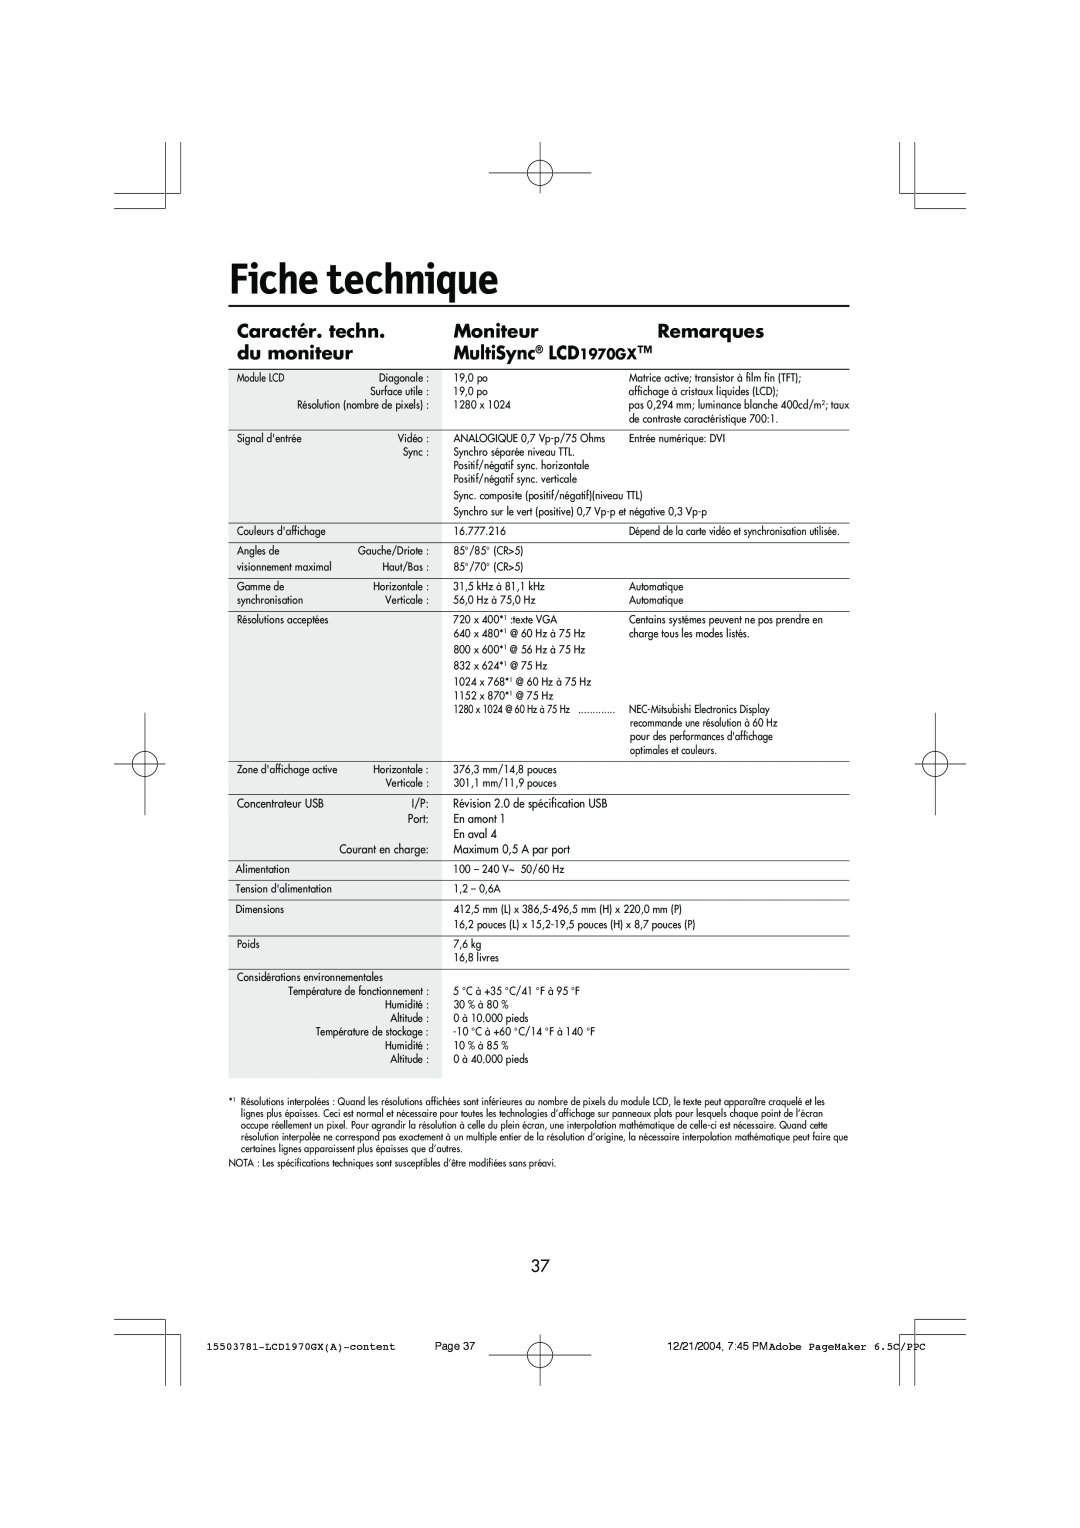 NEC user manual Fiche technique, Caractér. techn, Moniteur, Remarques, du moniteur, MultiSync LCD1970GX 